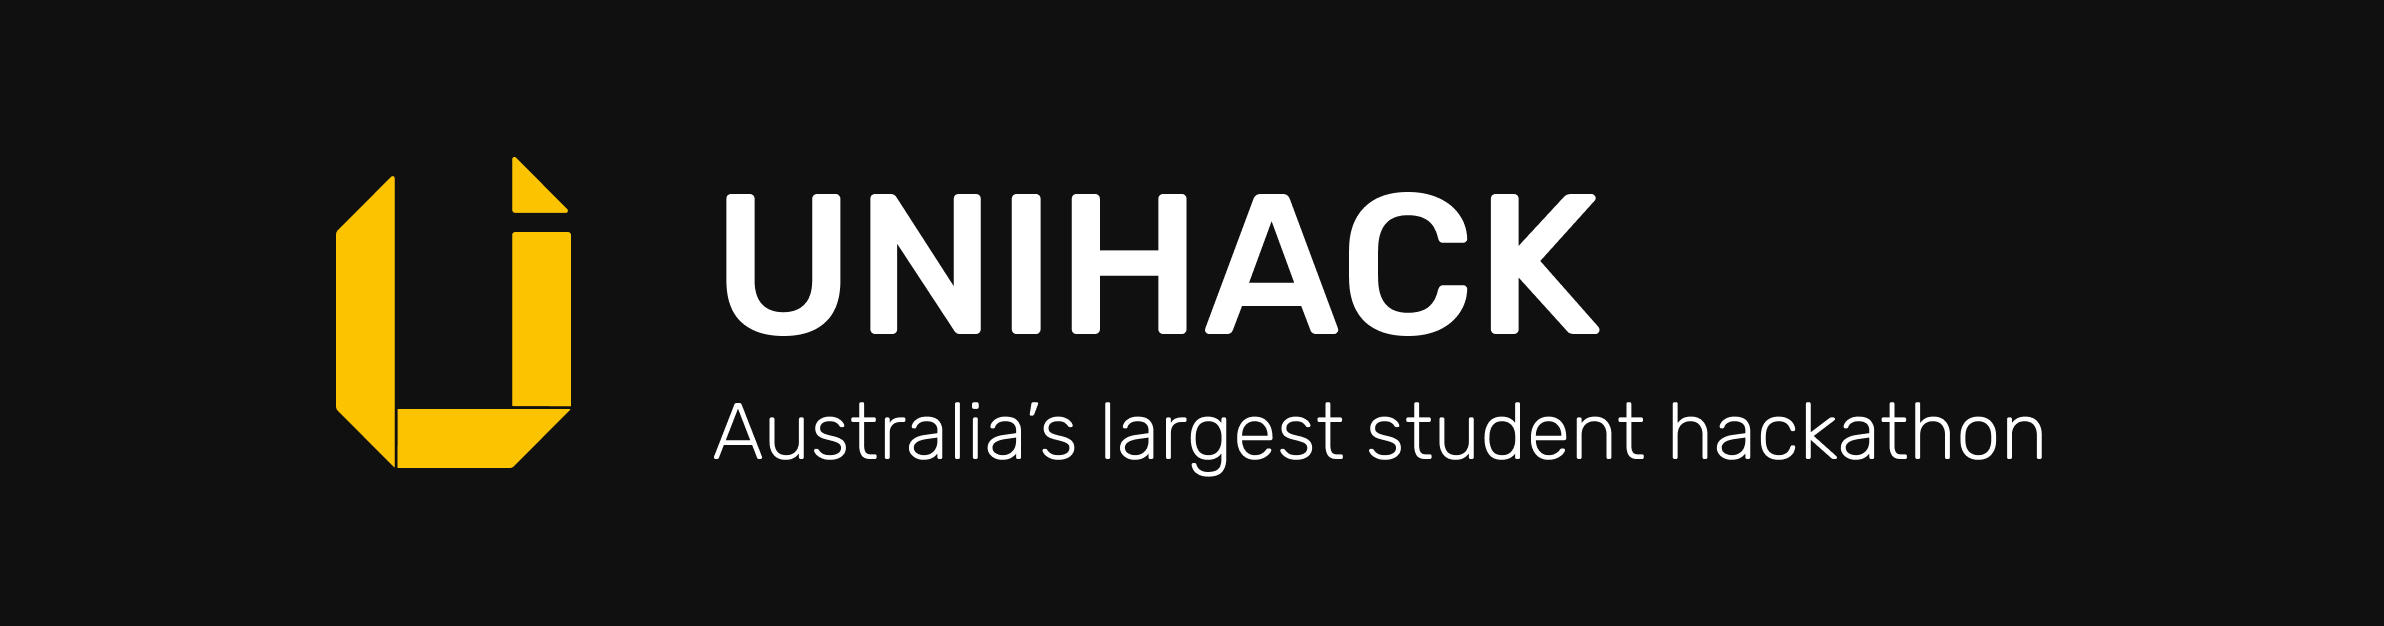 UNIHACK logo